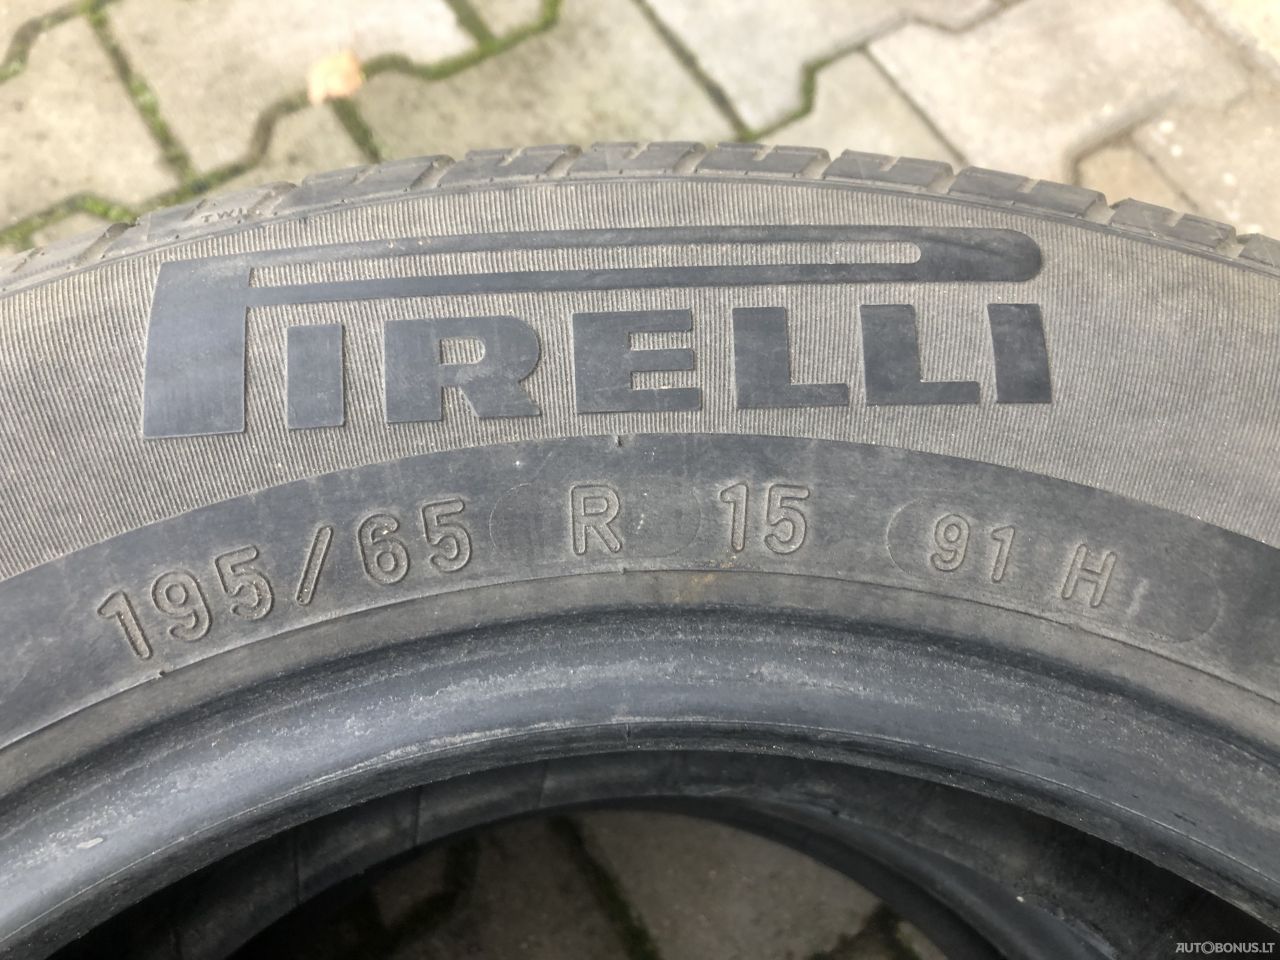 Pirelli summer tyres | 2